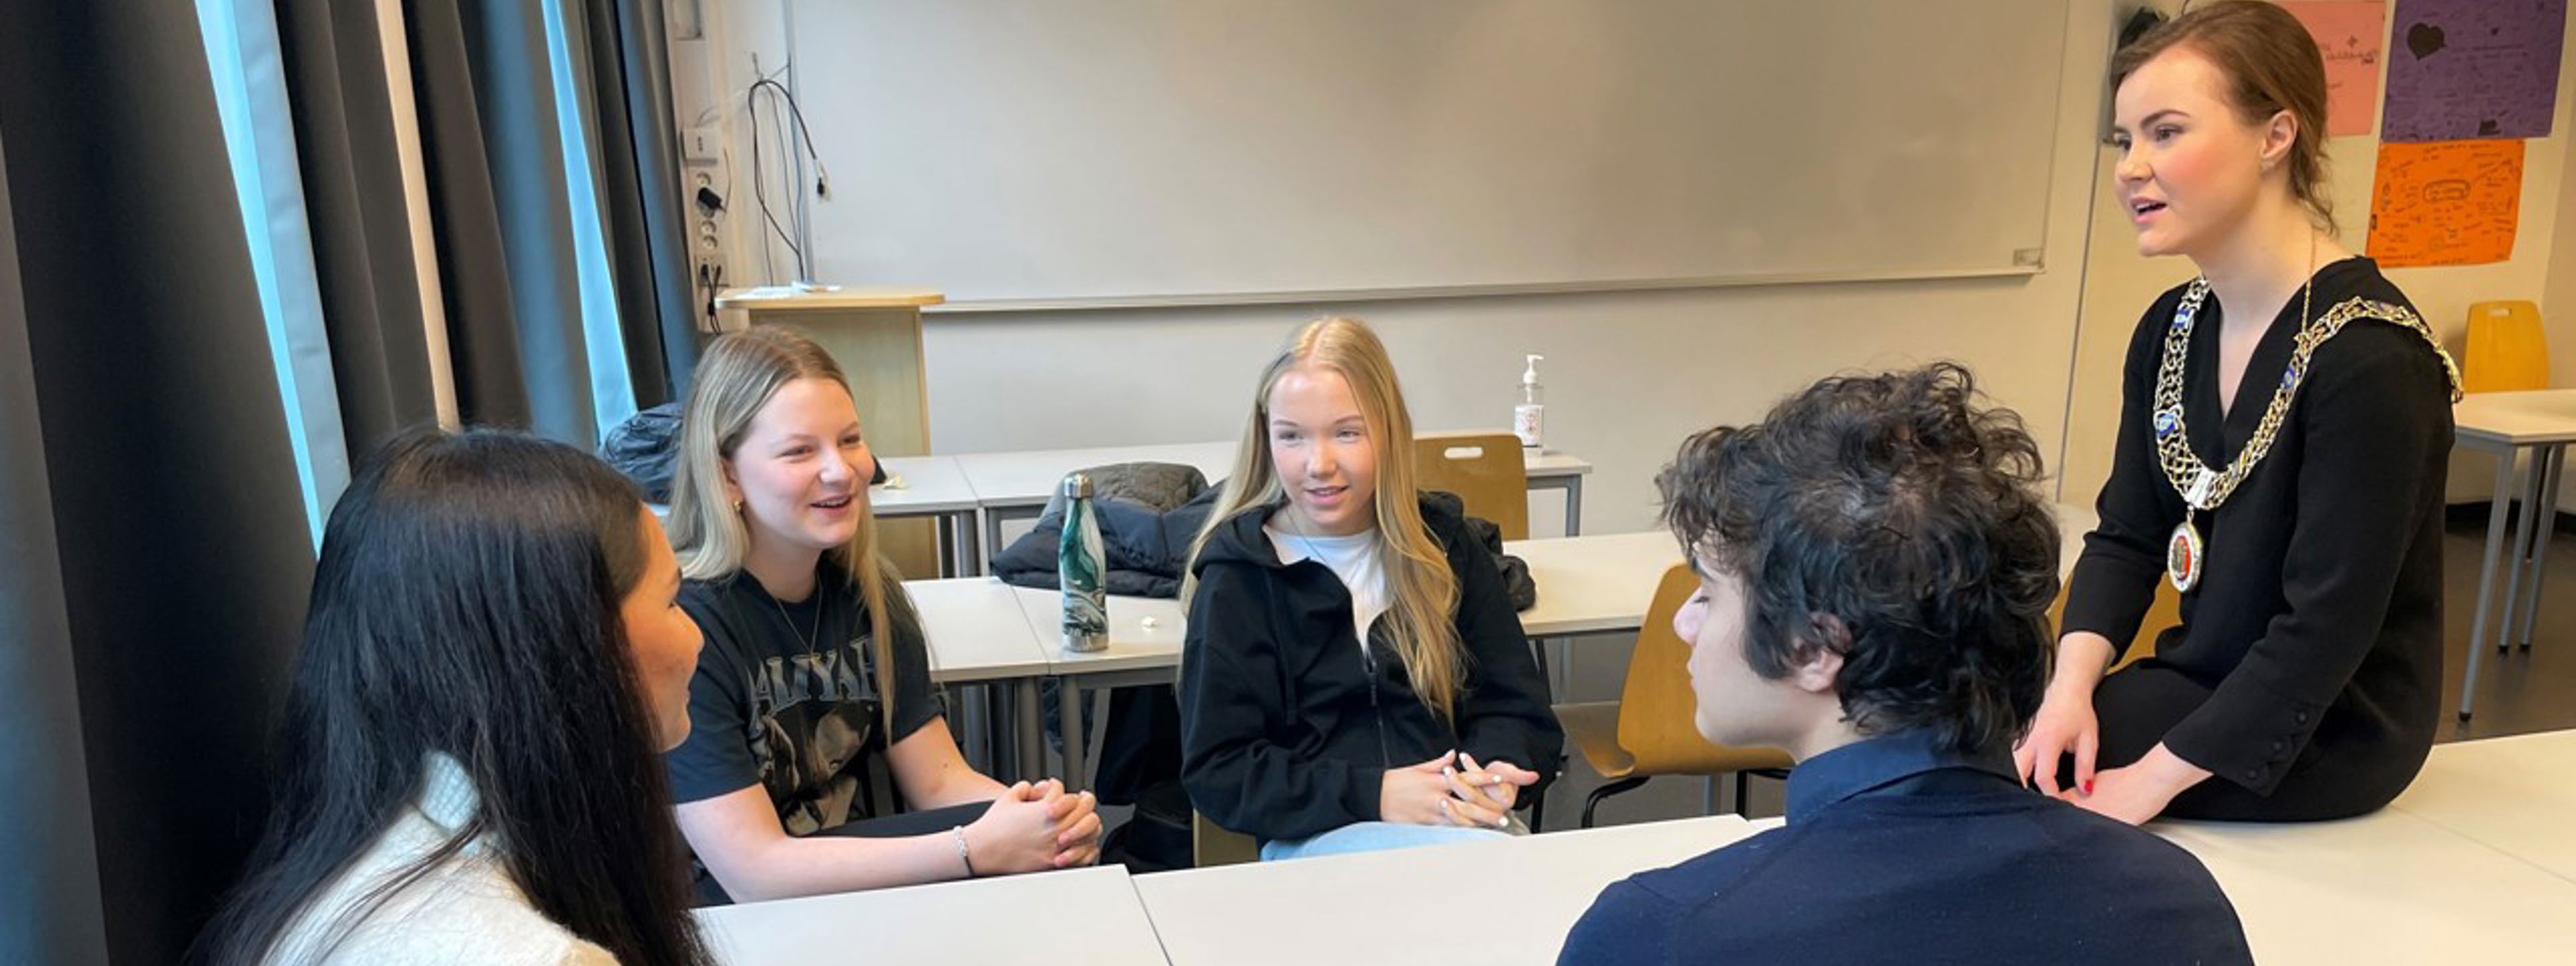 Ordfører Linn Kristn Engø snakkar med fire elevar i eit klasserom